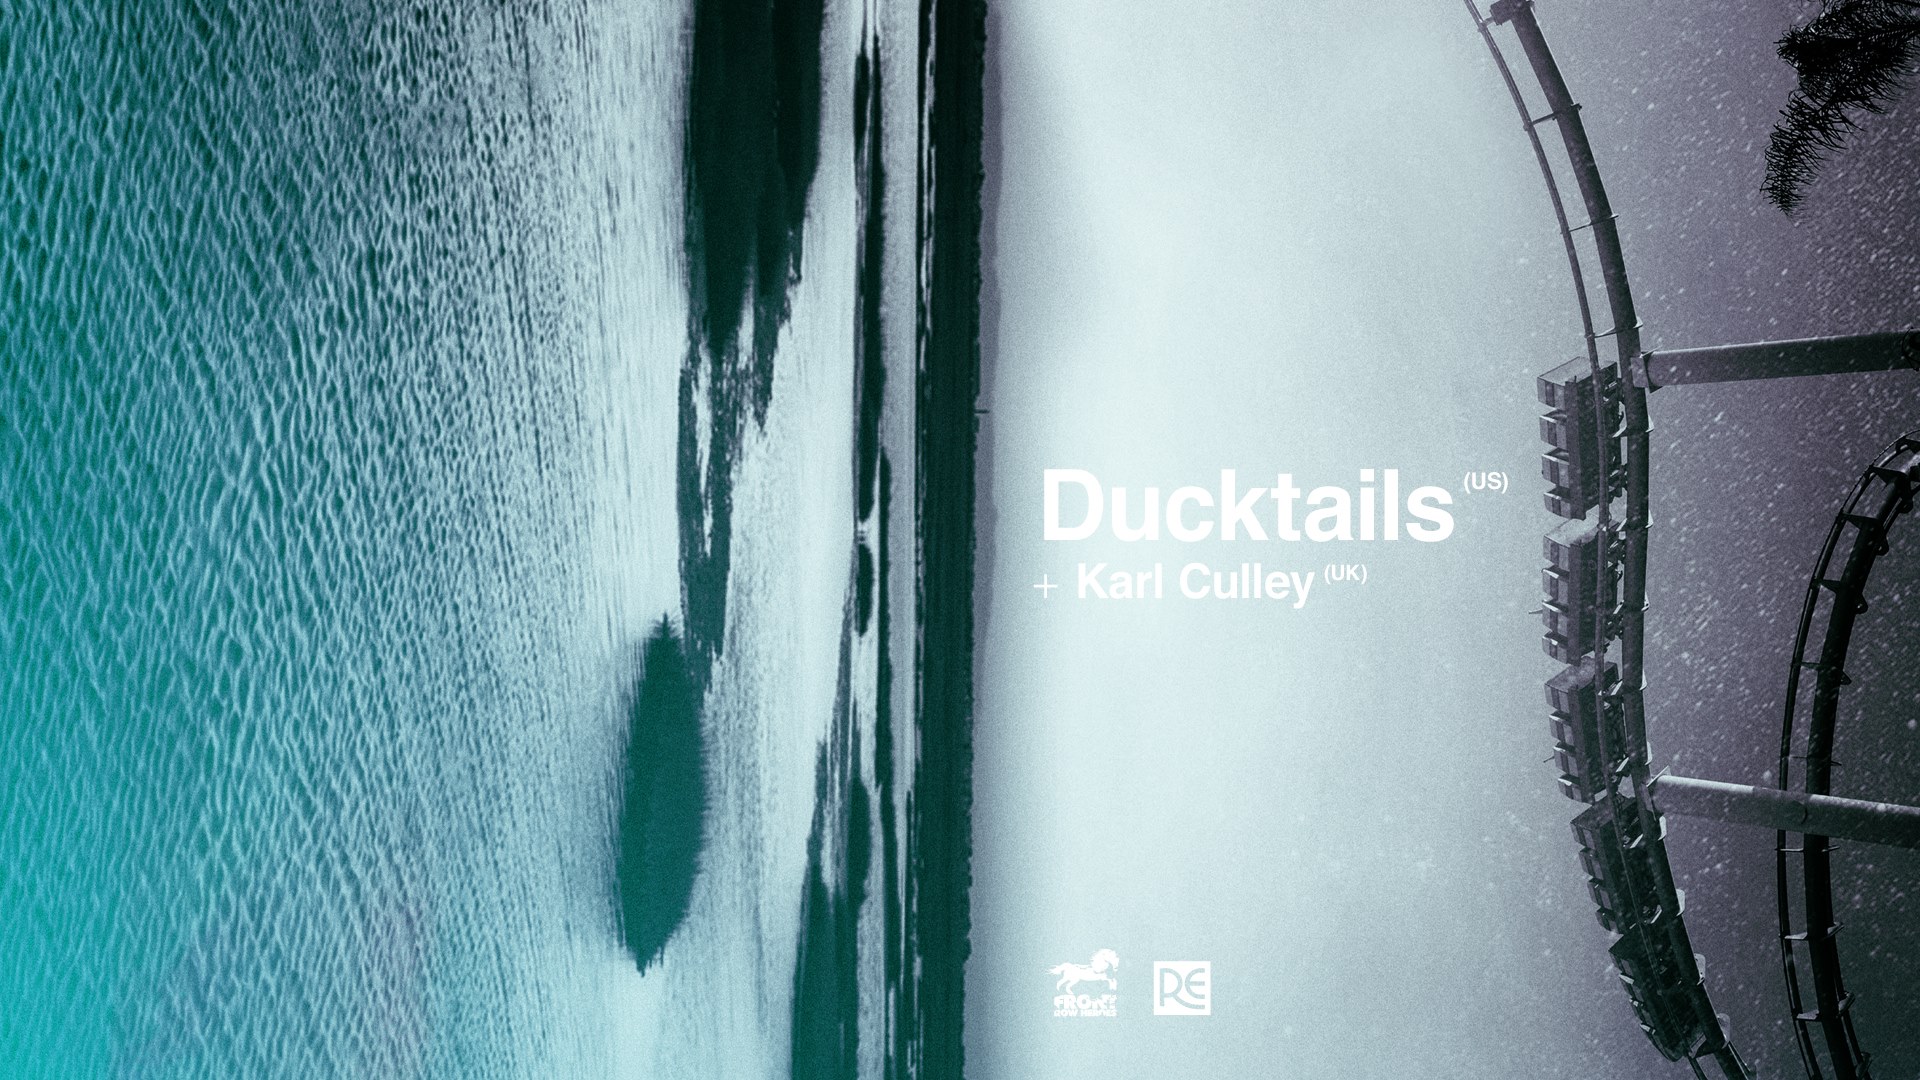 Ducktails, Karla Culley (źródło: materiały prasowe organizatora)